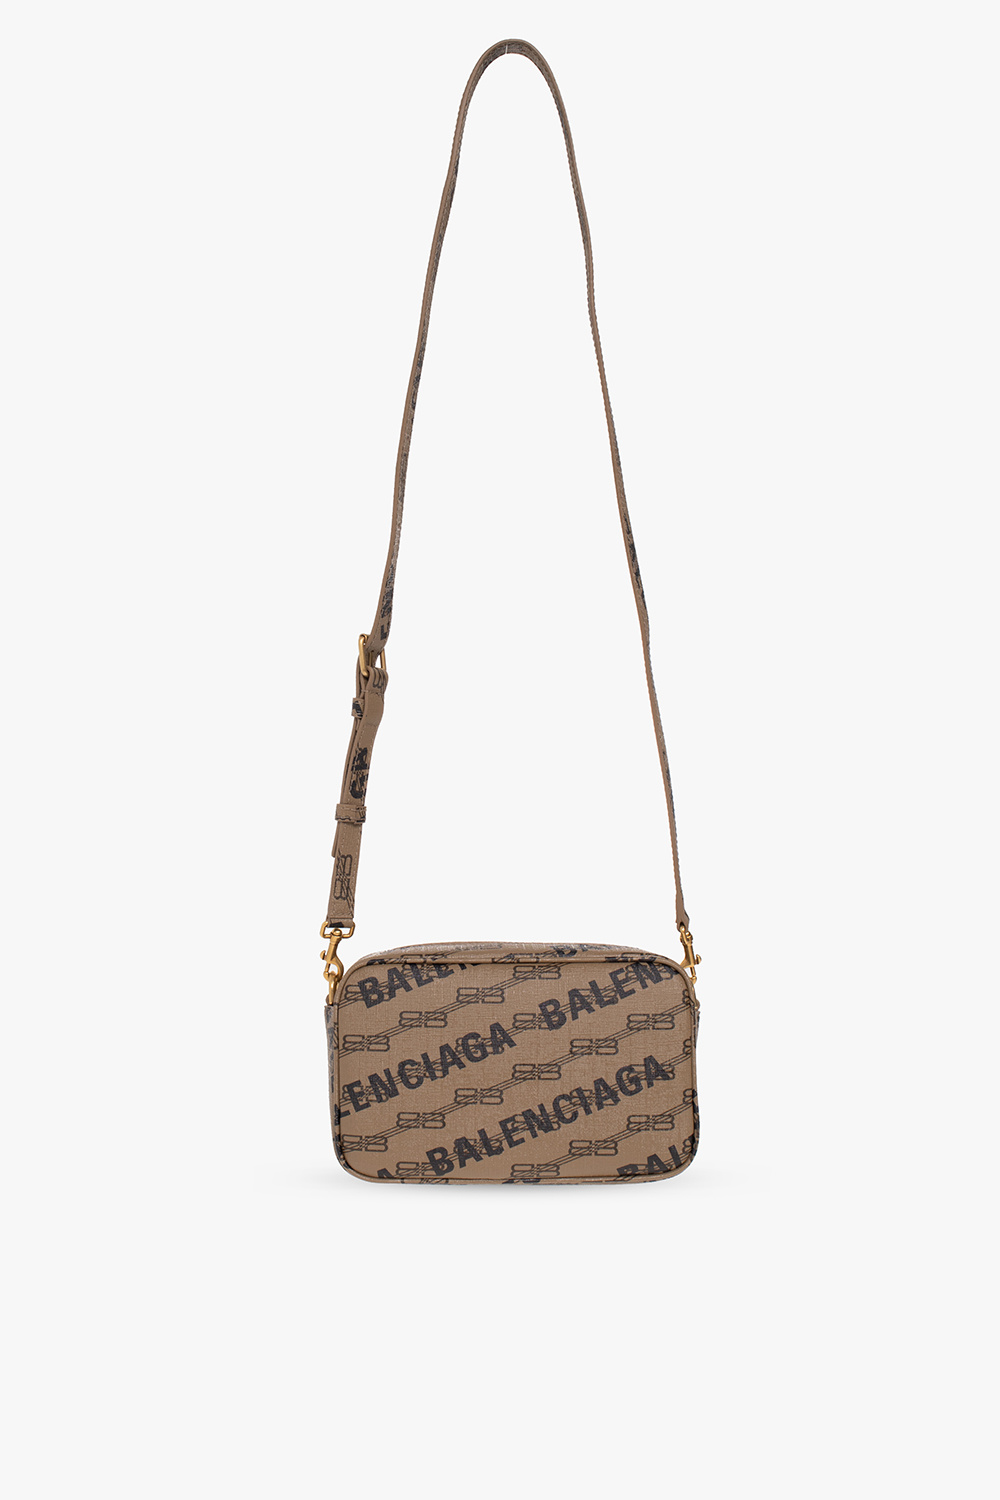 Balenciaga ‘Camera’ shoulder Coccinelle bag